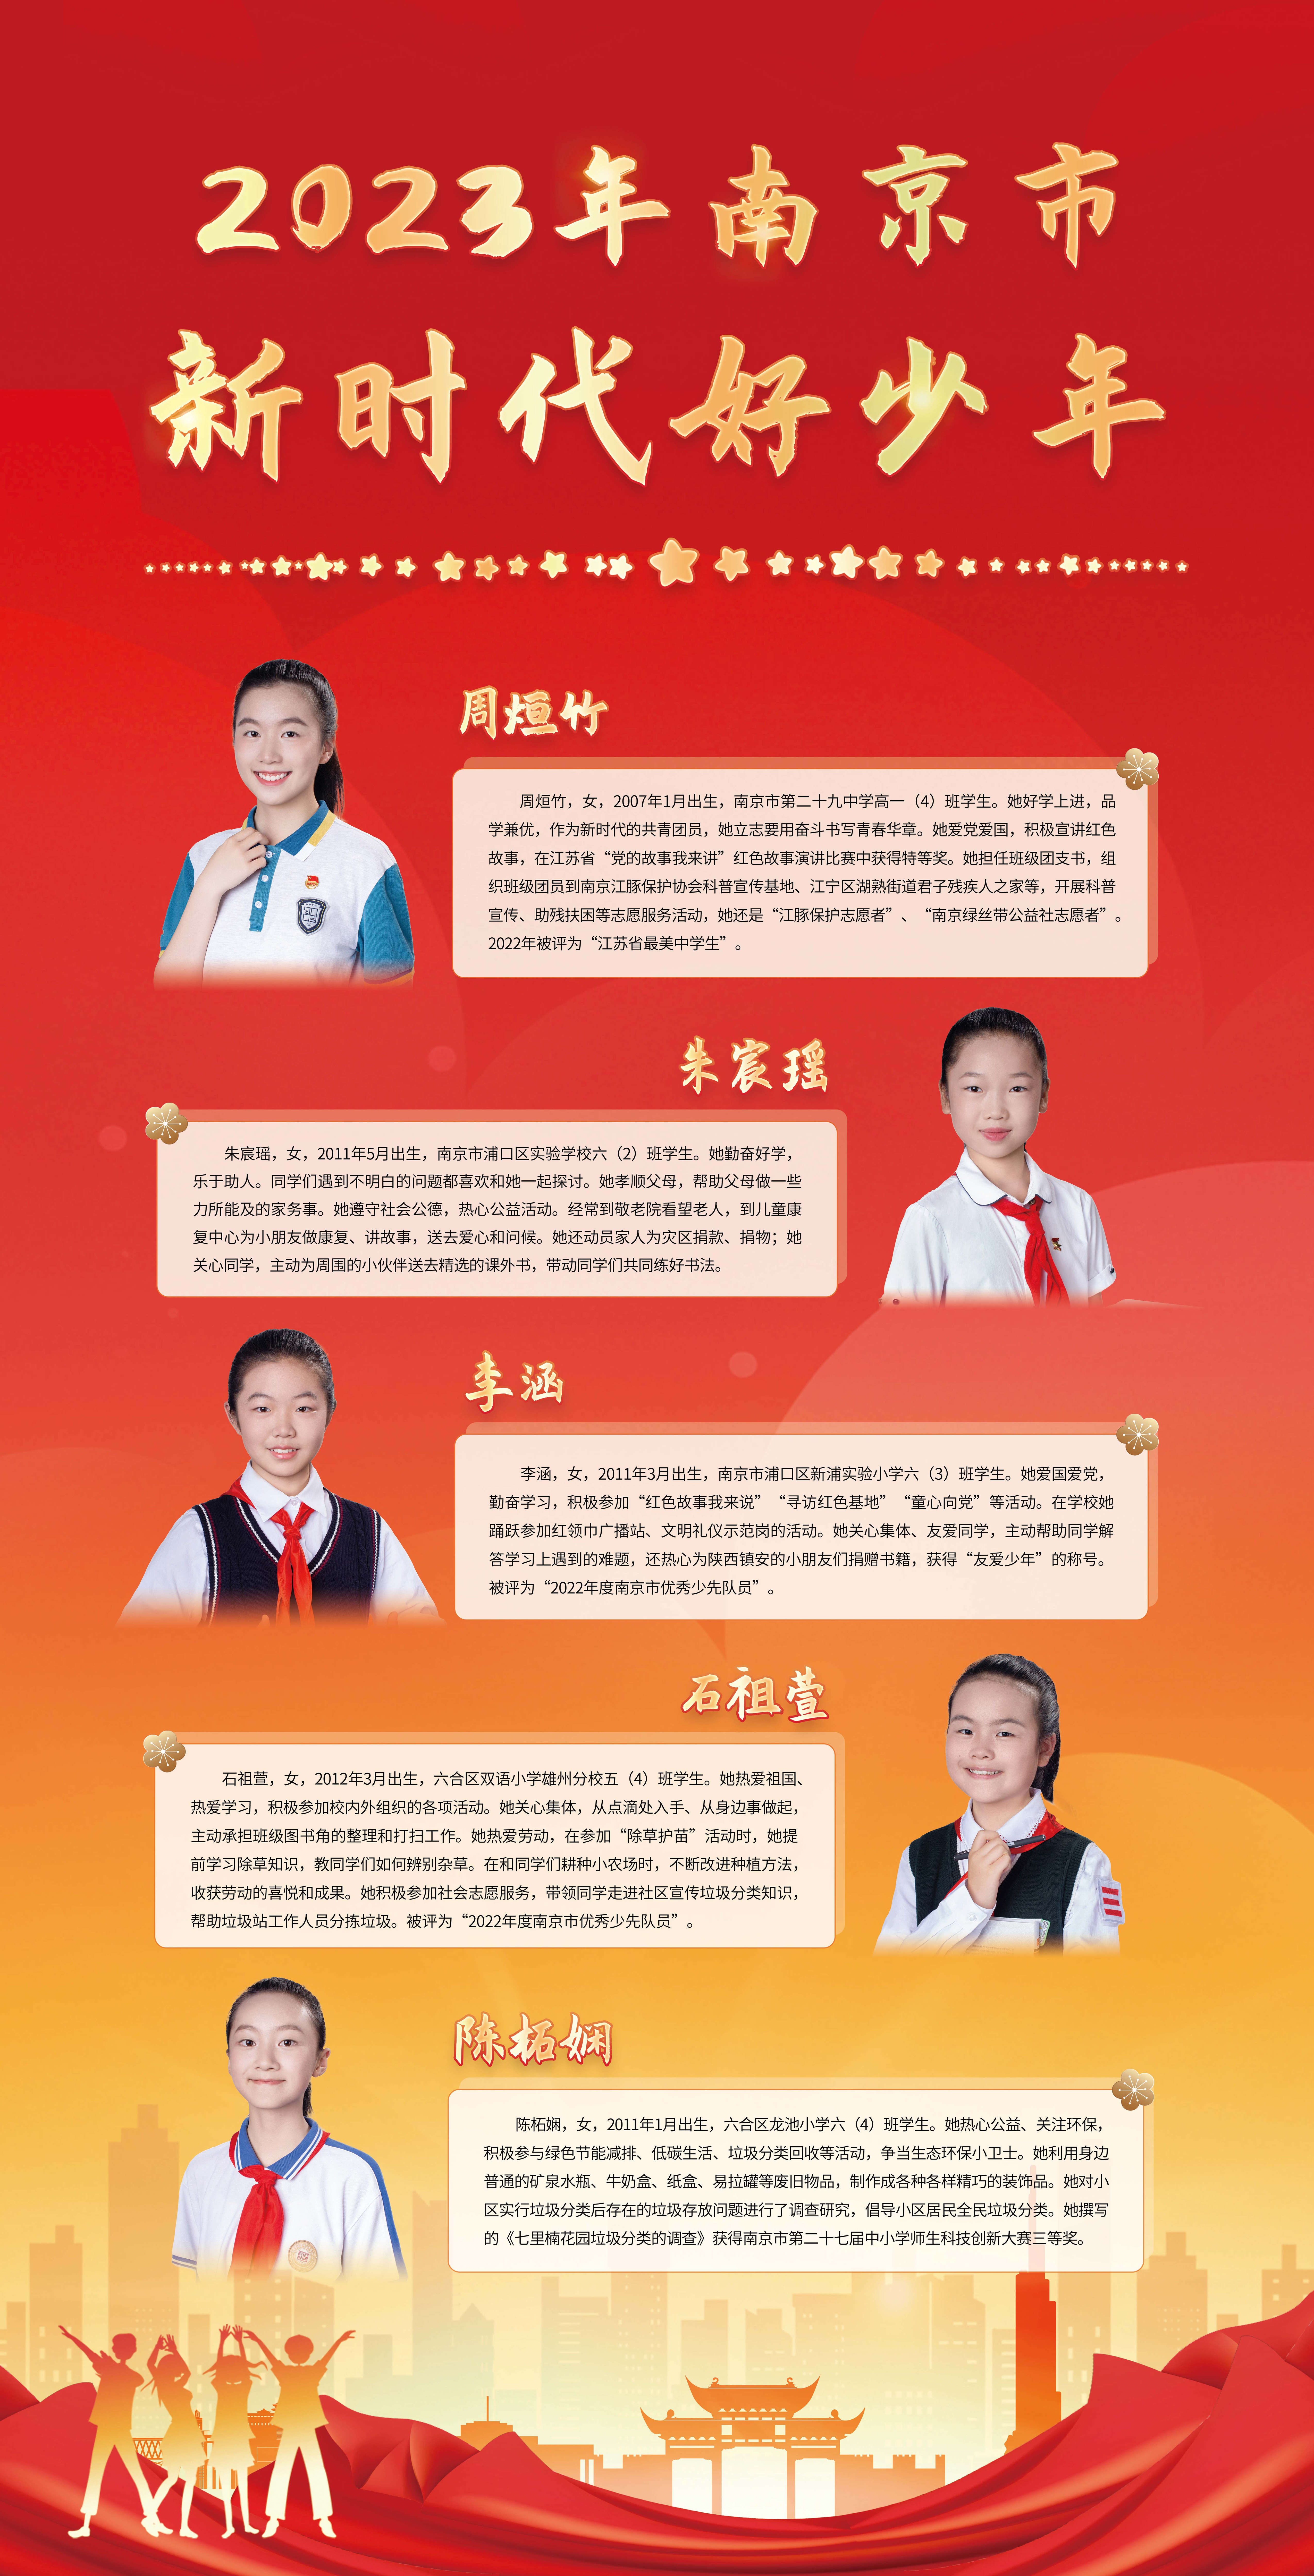 2023-年南京市第一批“新时代好少年”宣传展示图10.jpg